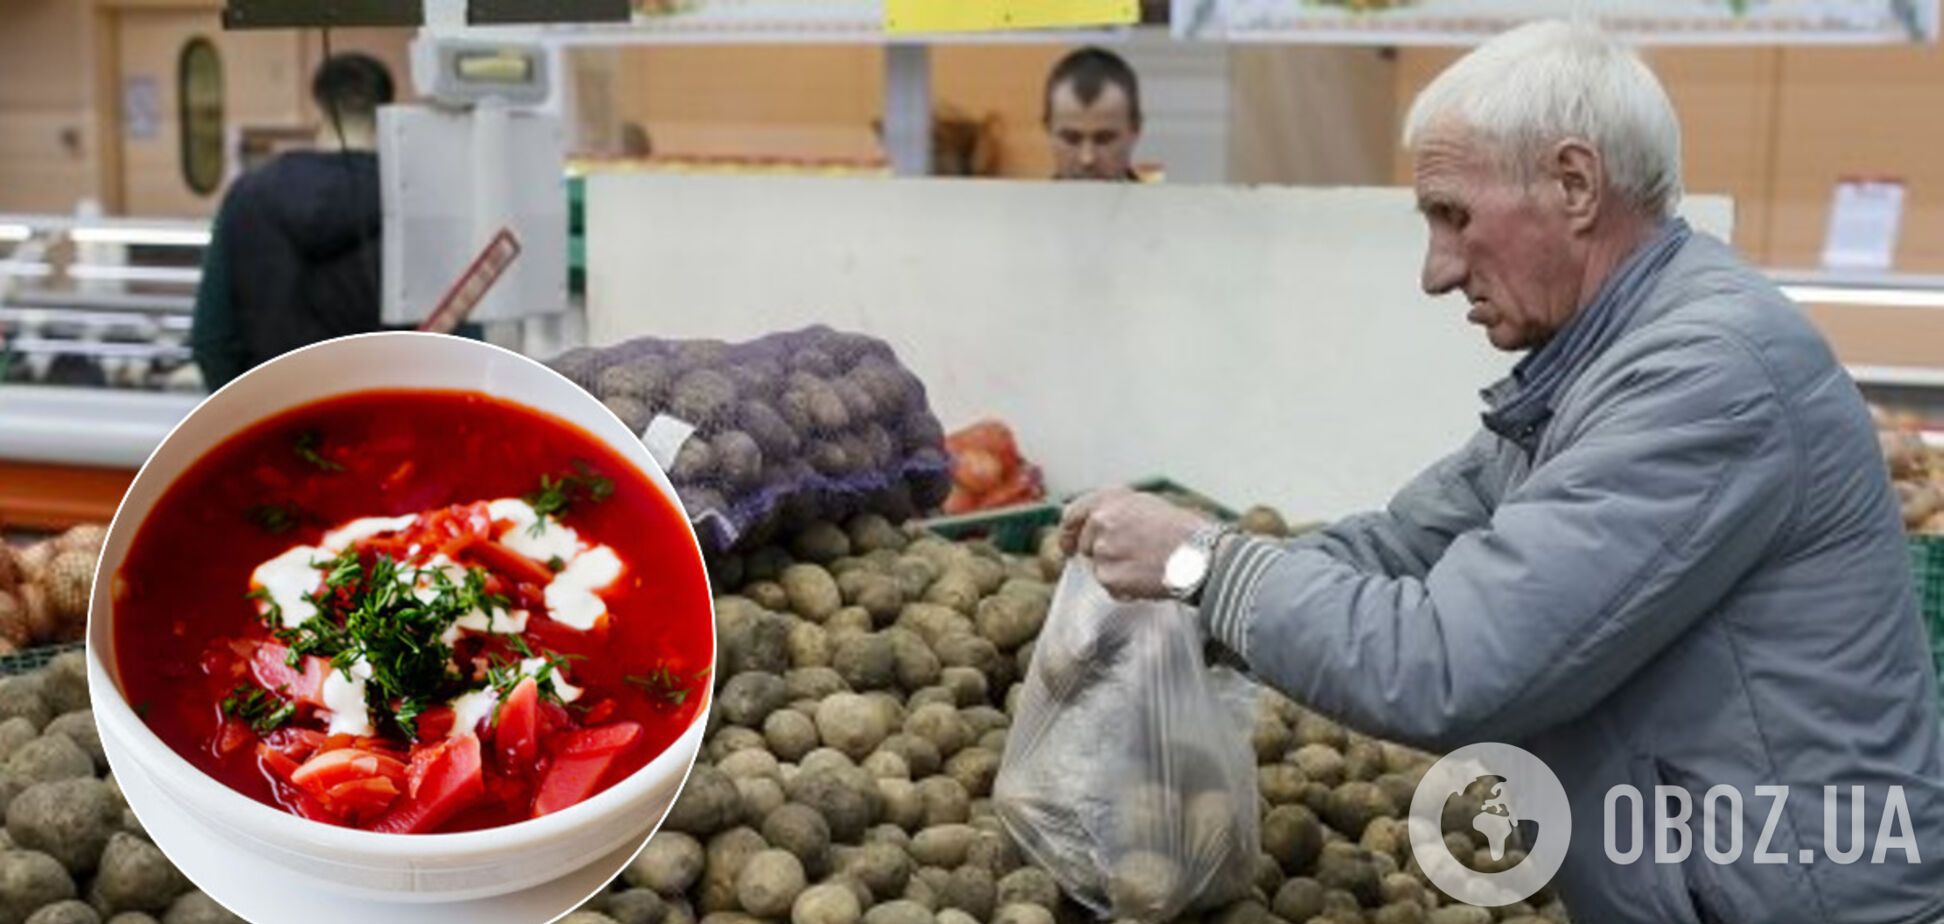 В Украину завезли 'техническую картошку': безопасно ли ее есть